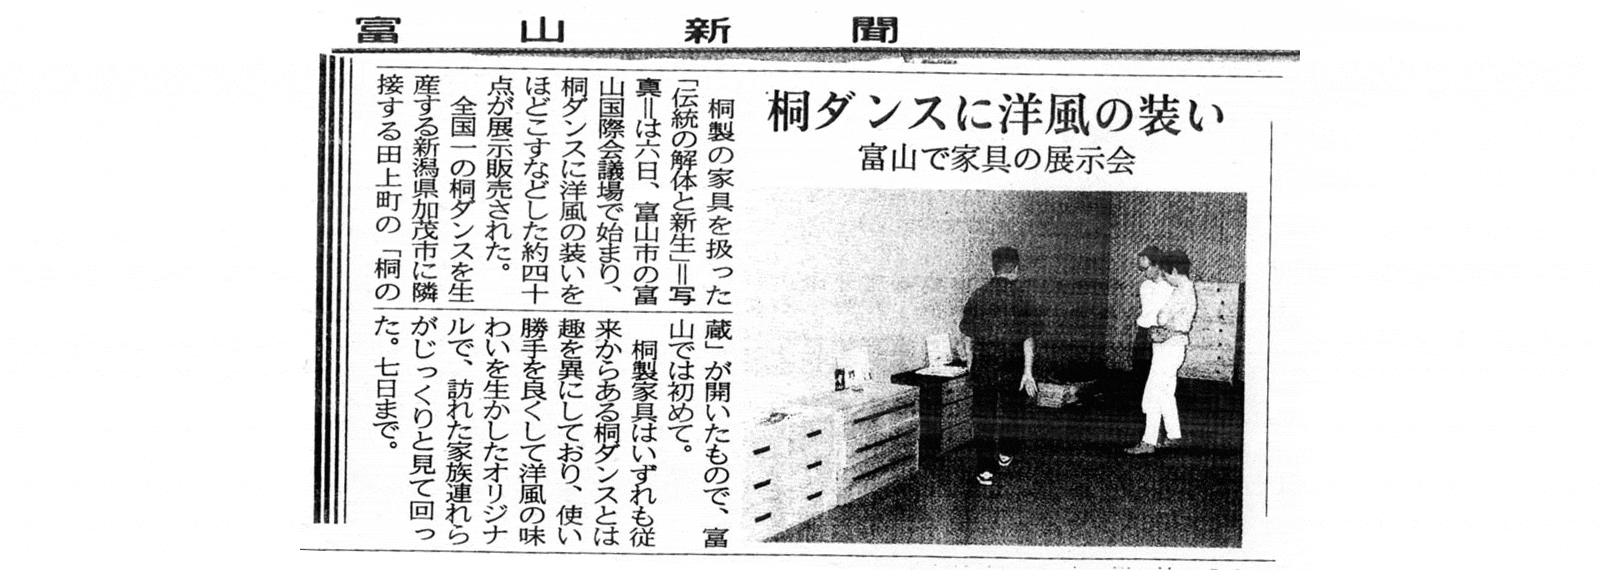 2002年9月6日 富山新聞取材